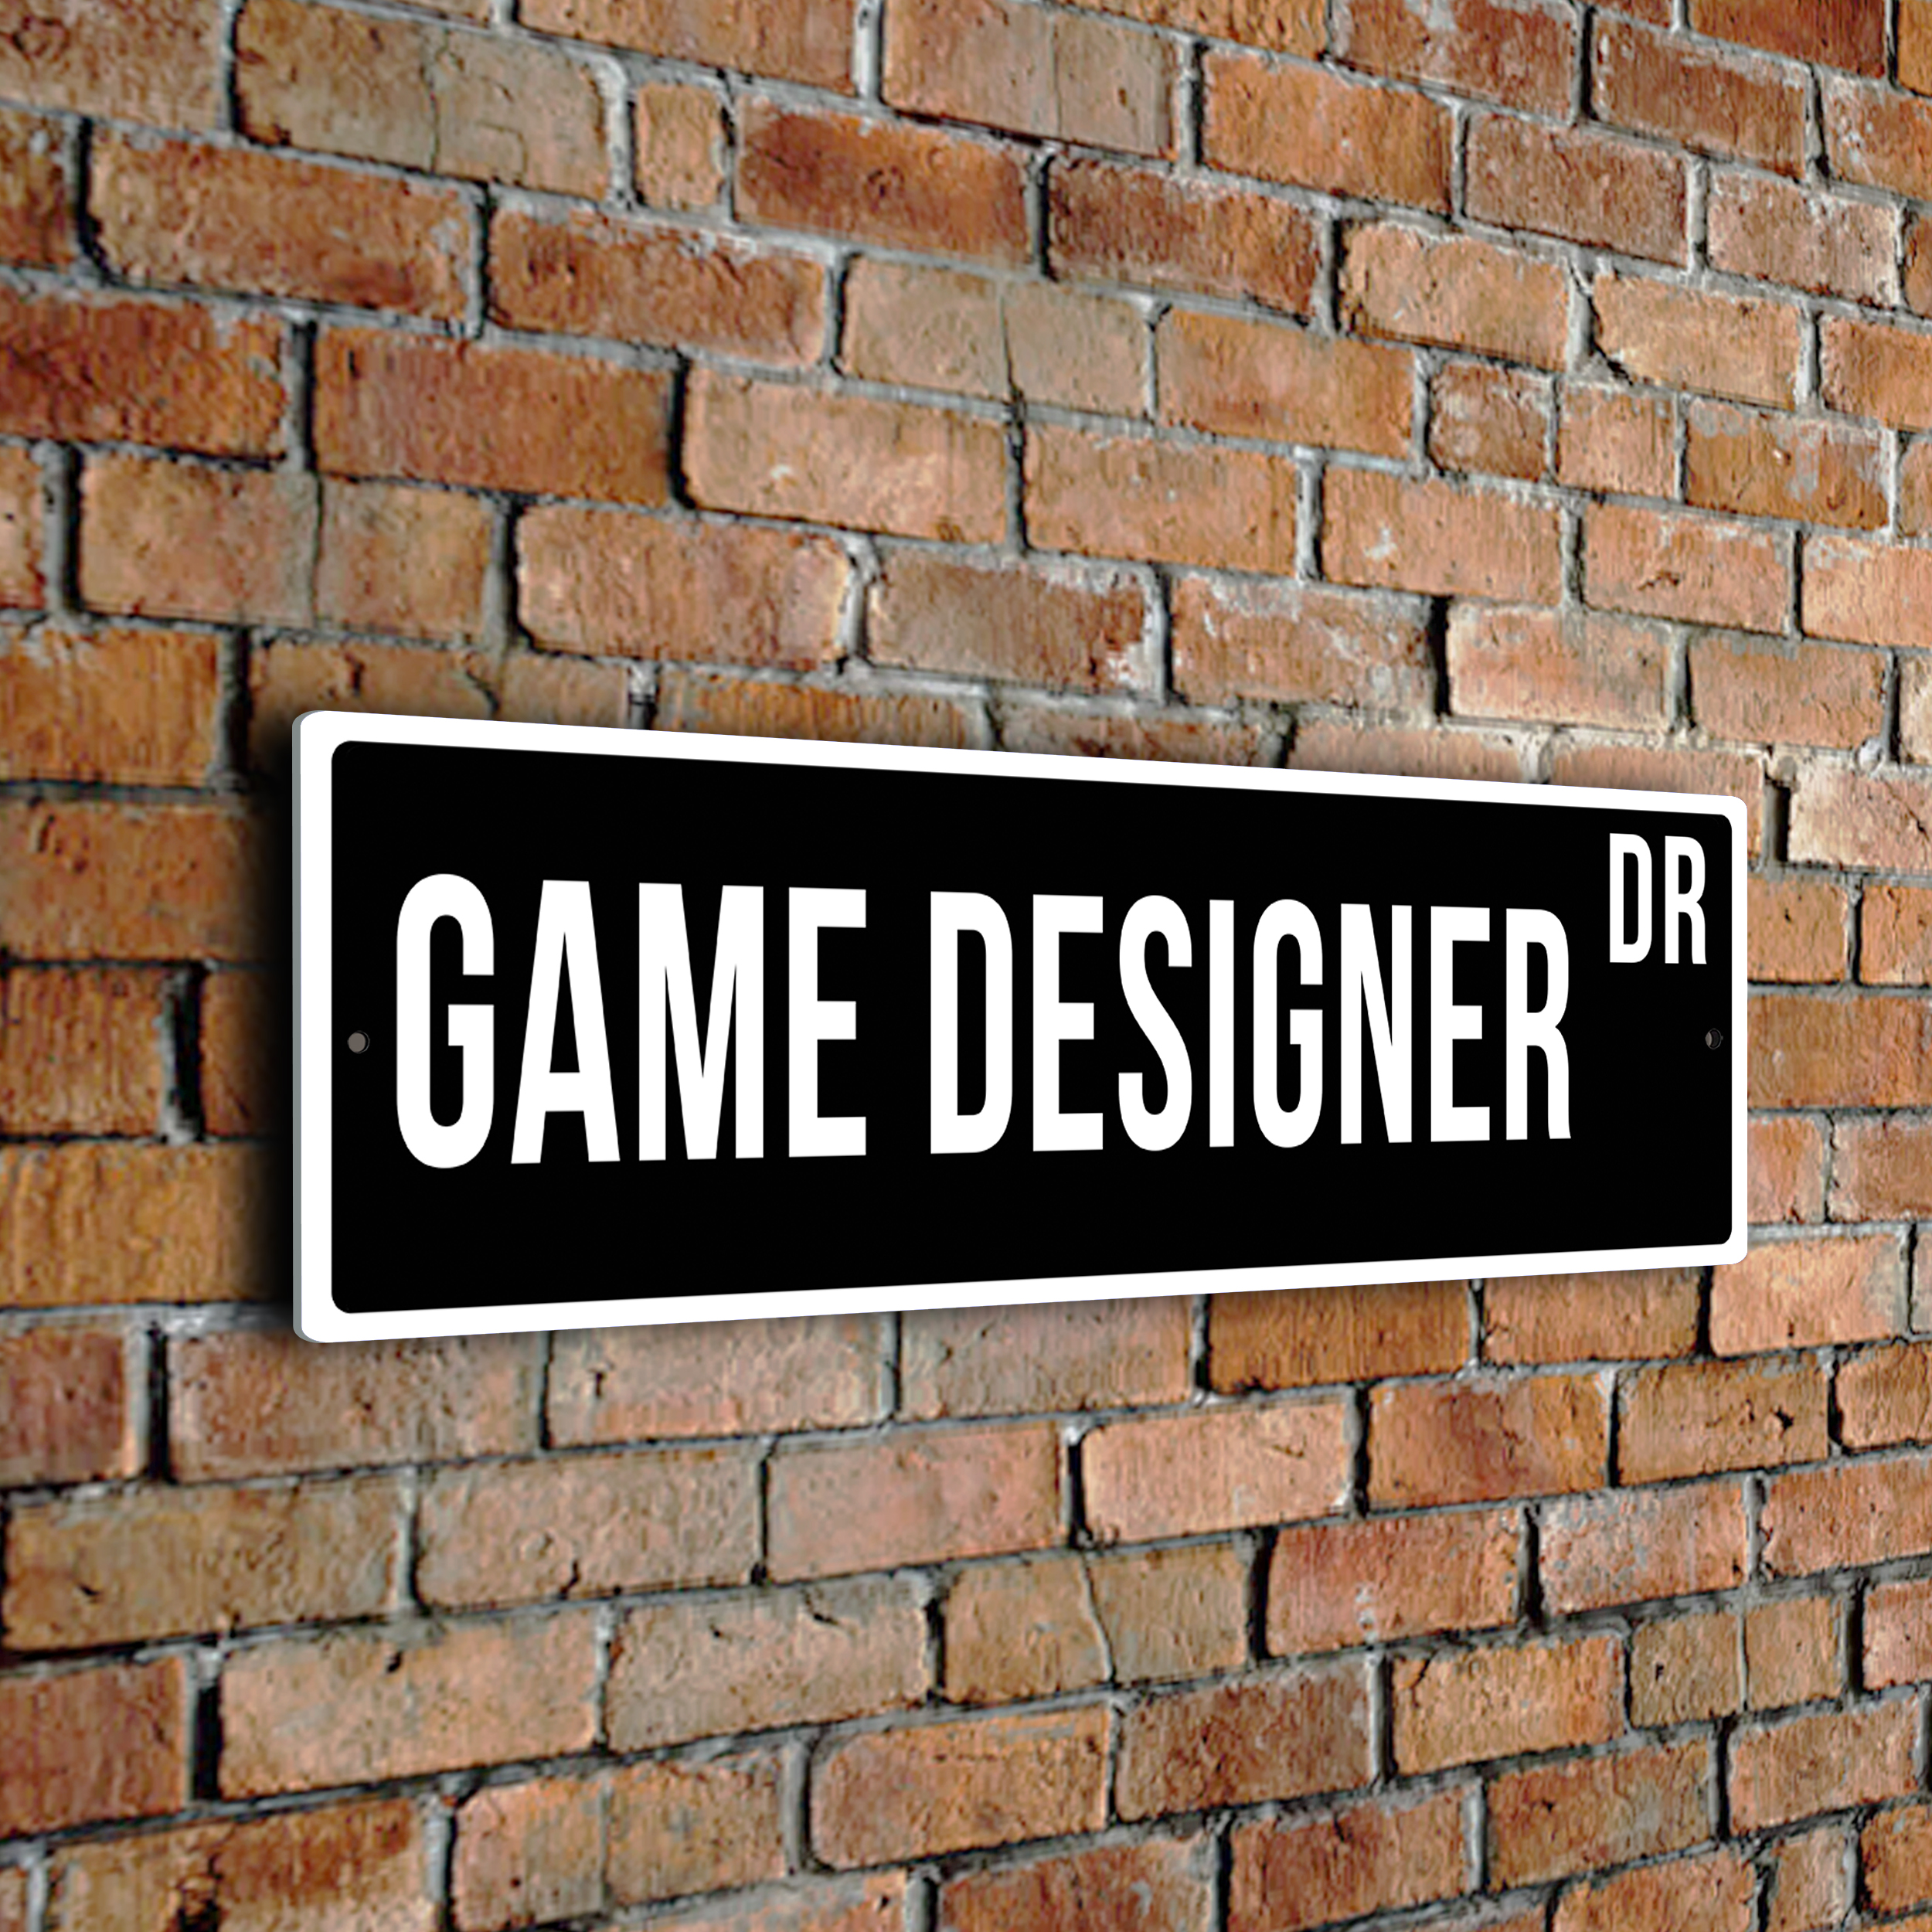 Game Designer street sign